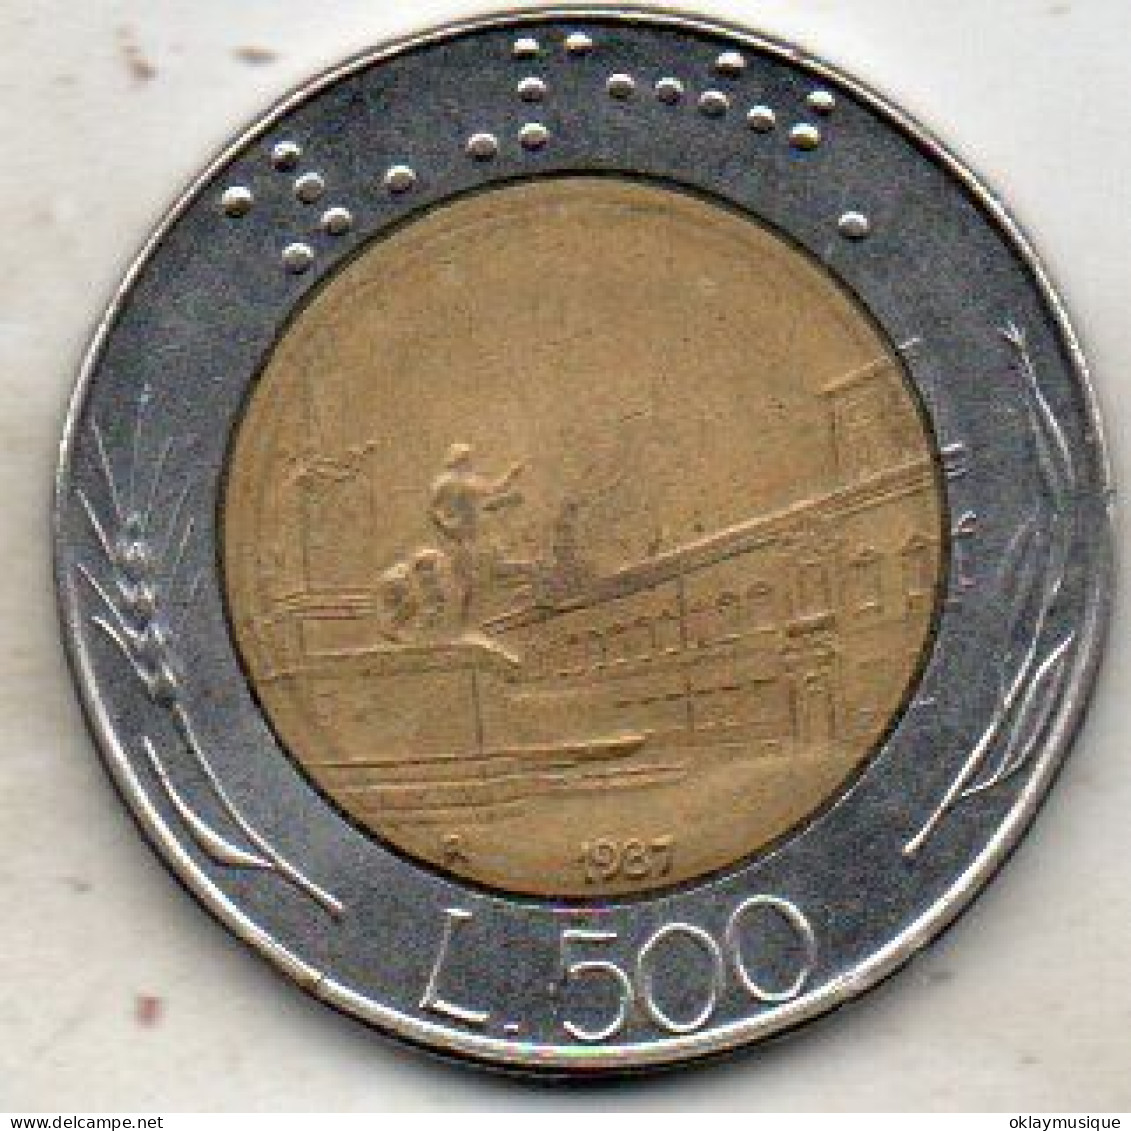 500 Lires 1987 - 500 Liras